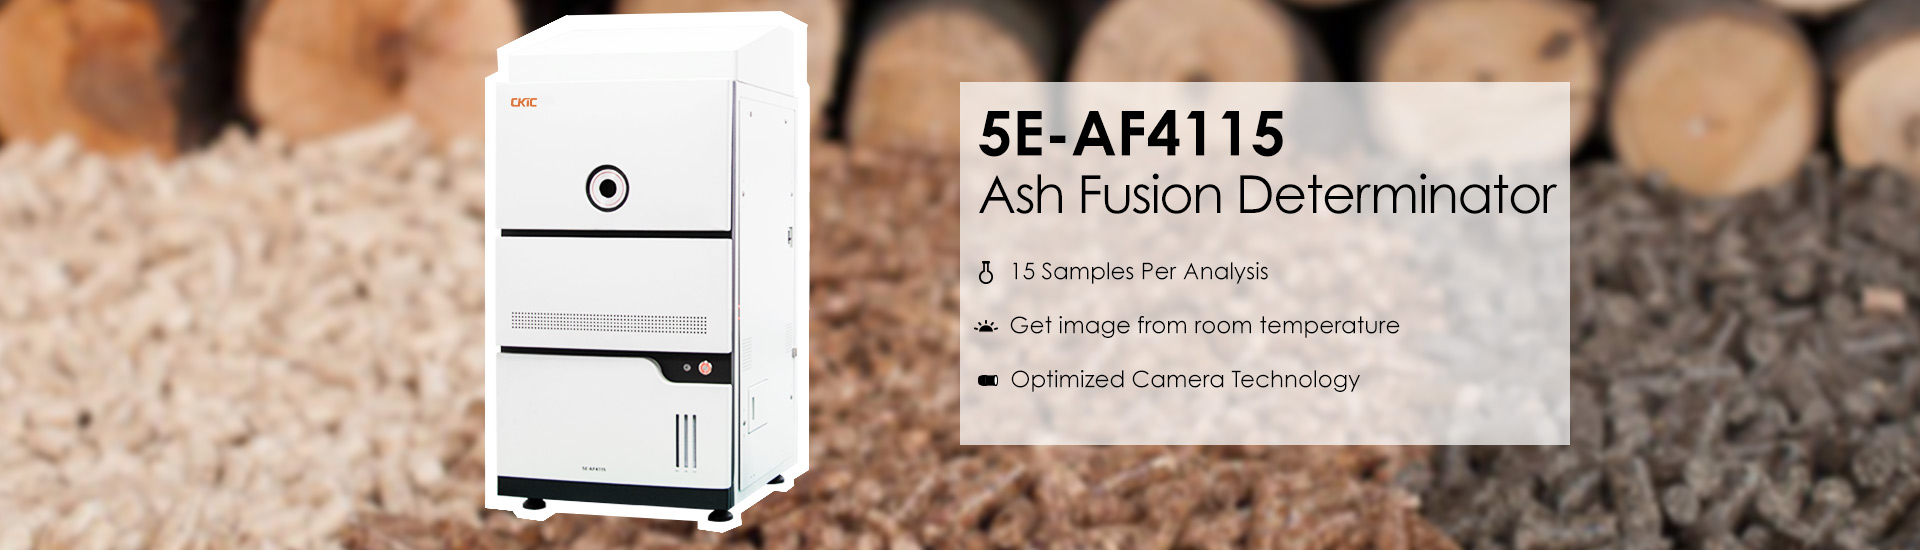 Ash Fusion Determinator